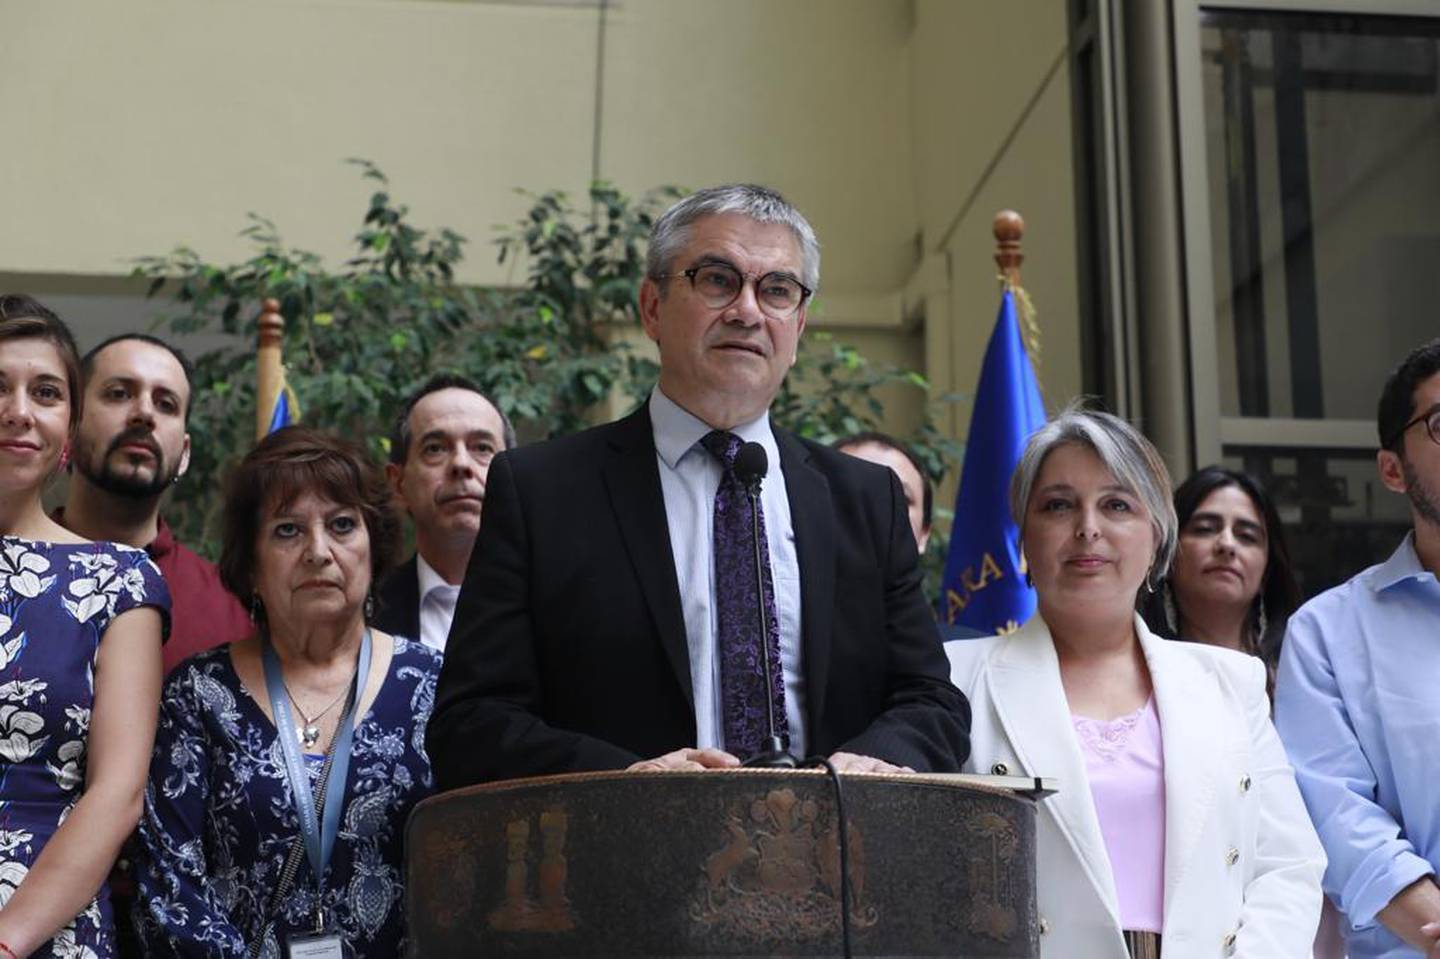 Los ministros de Hacienda y del Trabajo, Mario Marcel y Jeanette Jara, en una conferencia de prensa en el Congreso de Chile el 25 de enero de 2023. Foto: Ministerio de Hacienda